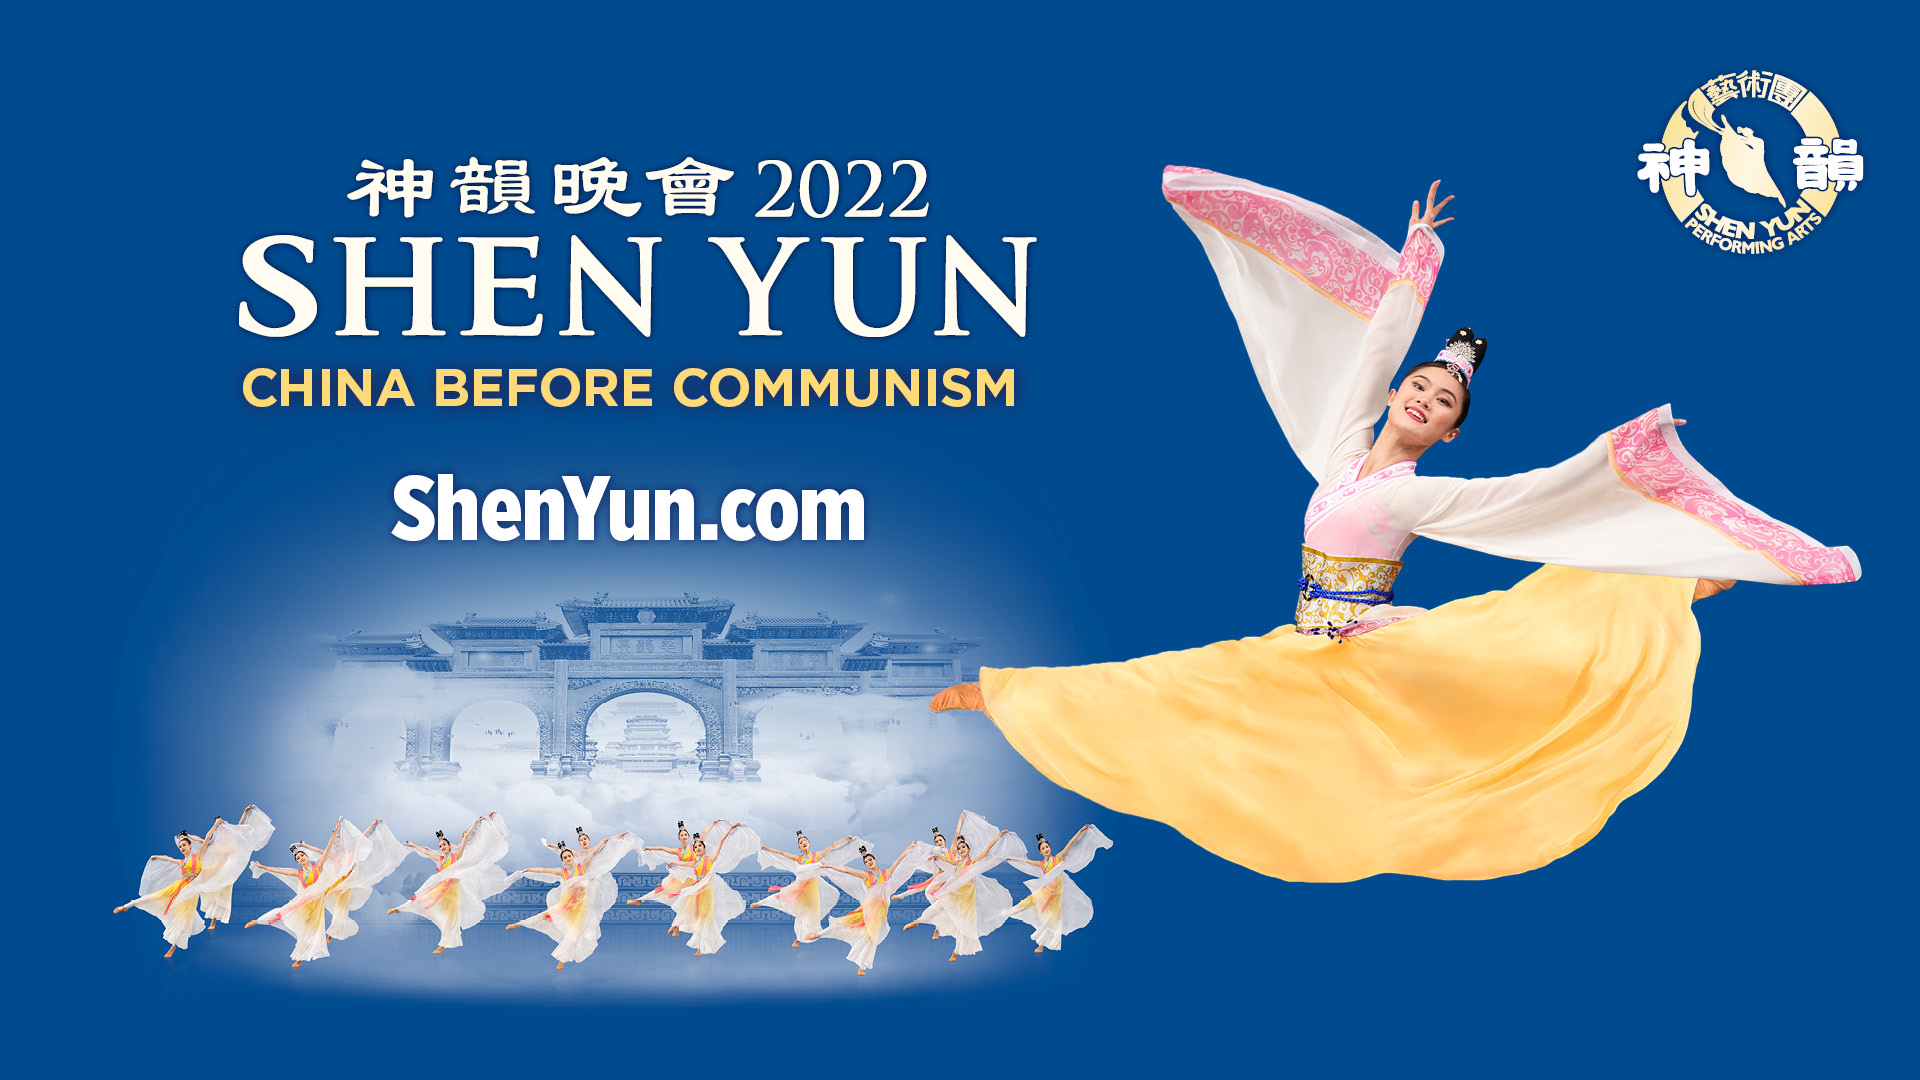 Shen Yun Show